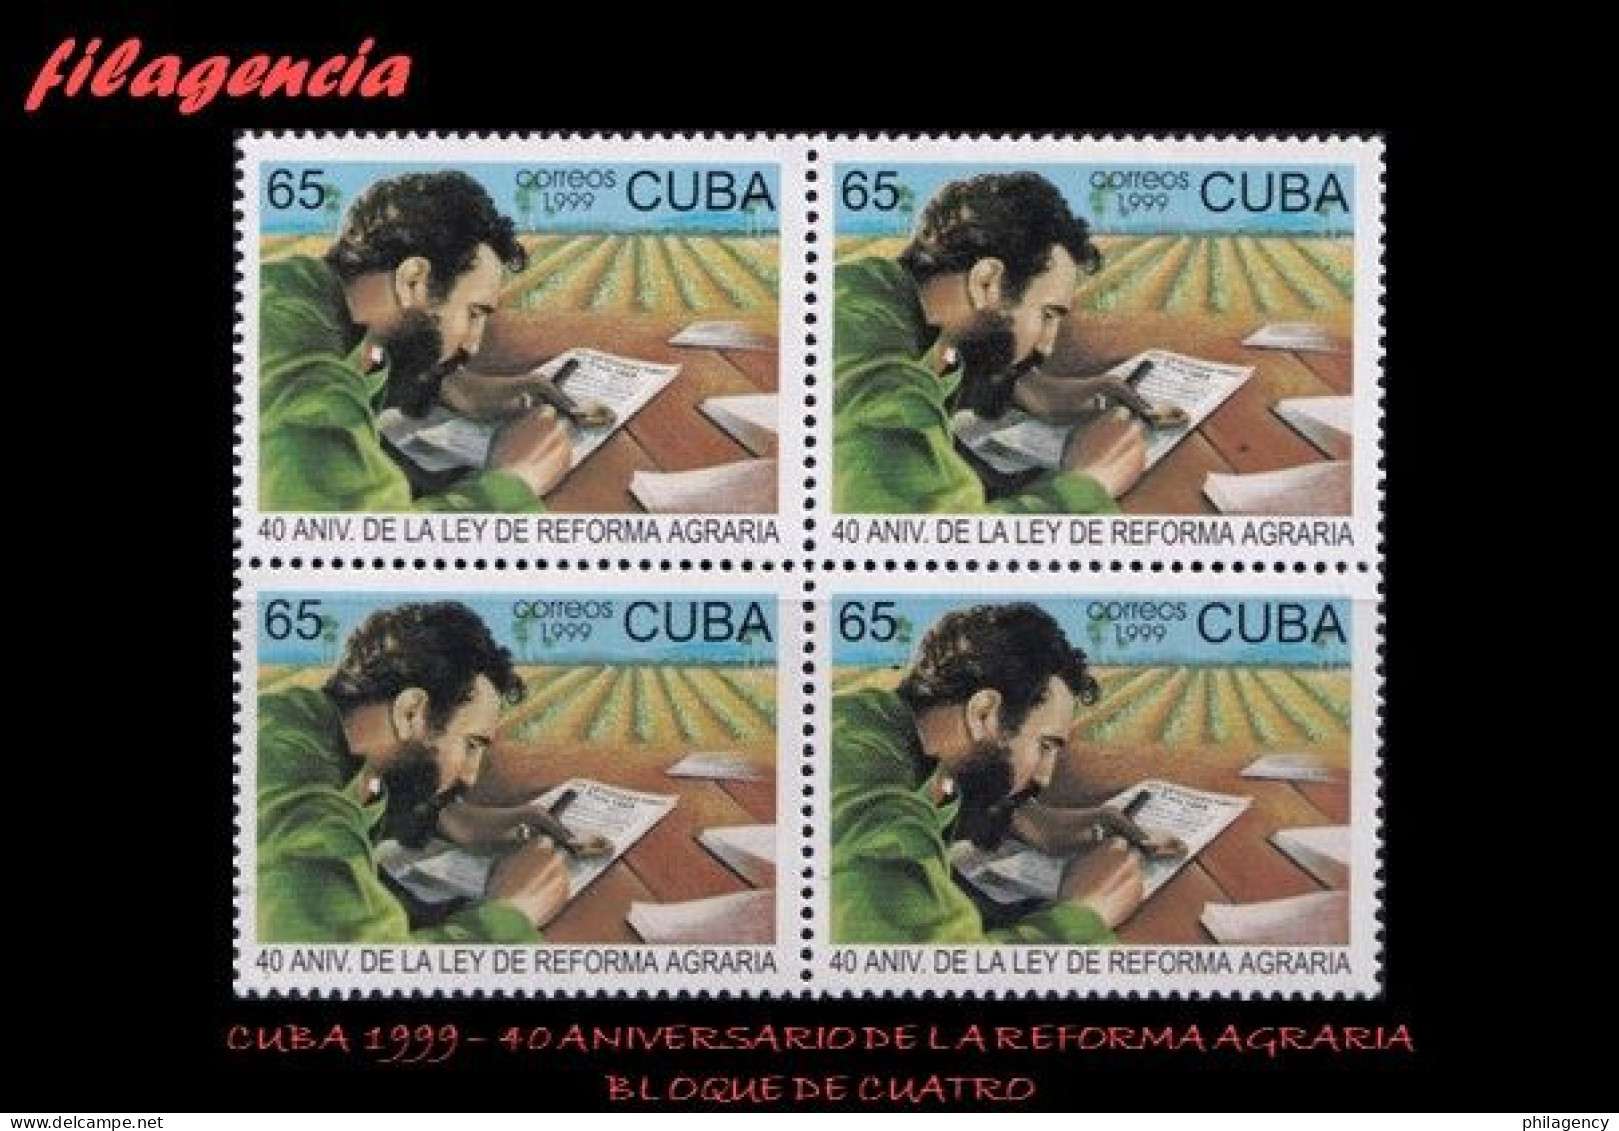 CUBA. BLOQUES DE CUATRO. 1999-14 40 ANIVERSARIO DE LA LEY DE REFORMA AGRARIA - Nuevos